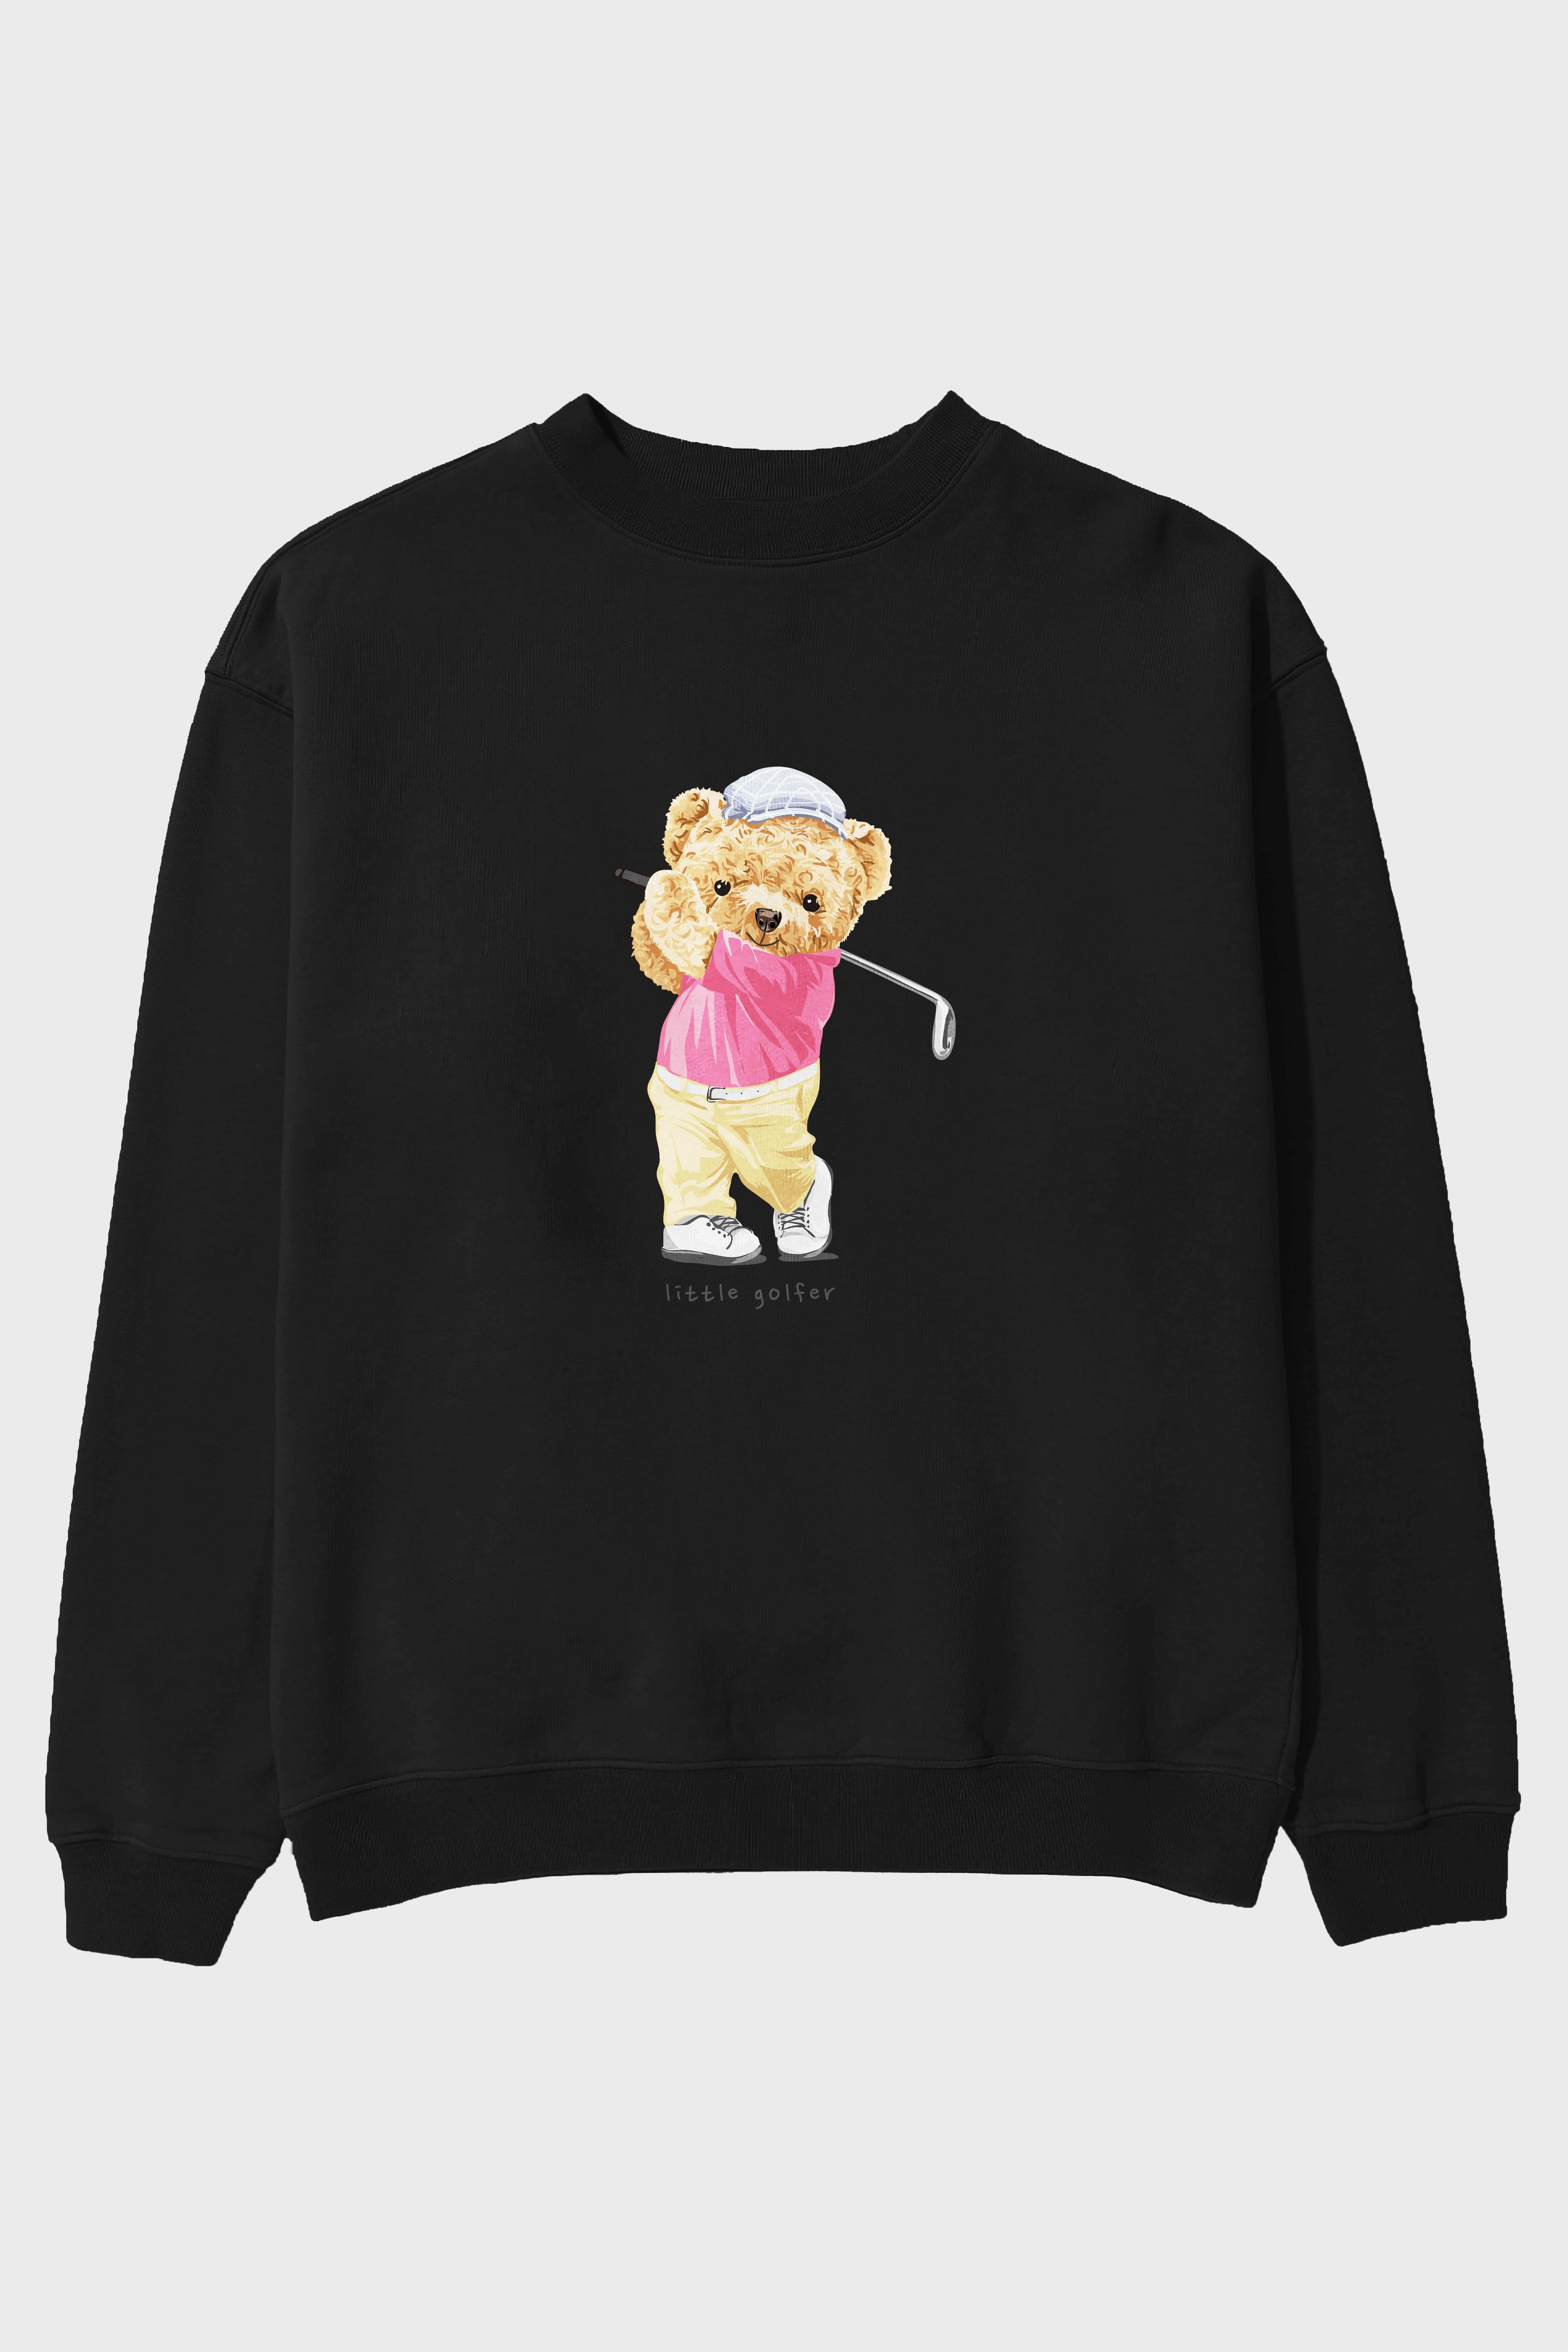 Teddy Bear Little Golfer Ön Baskılı Oversize Sweatshirt Erkek Kadın Unisex